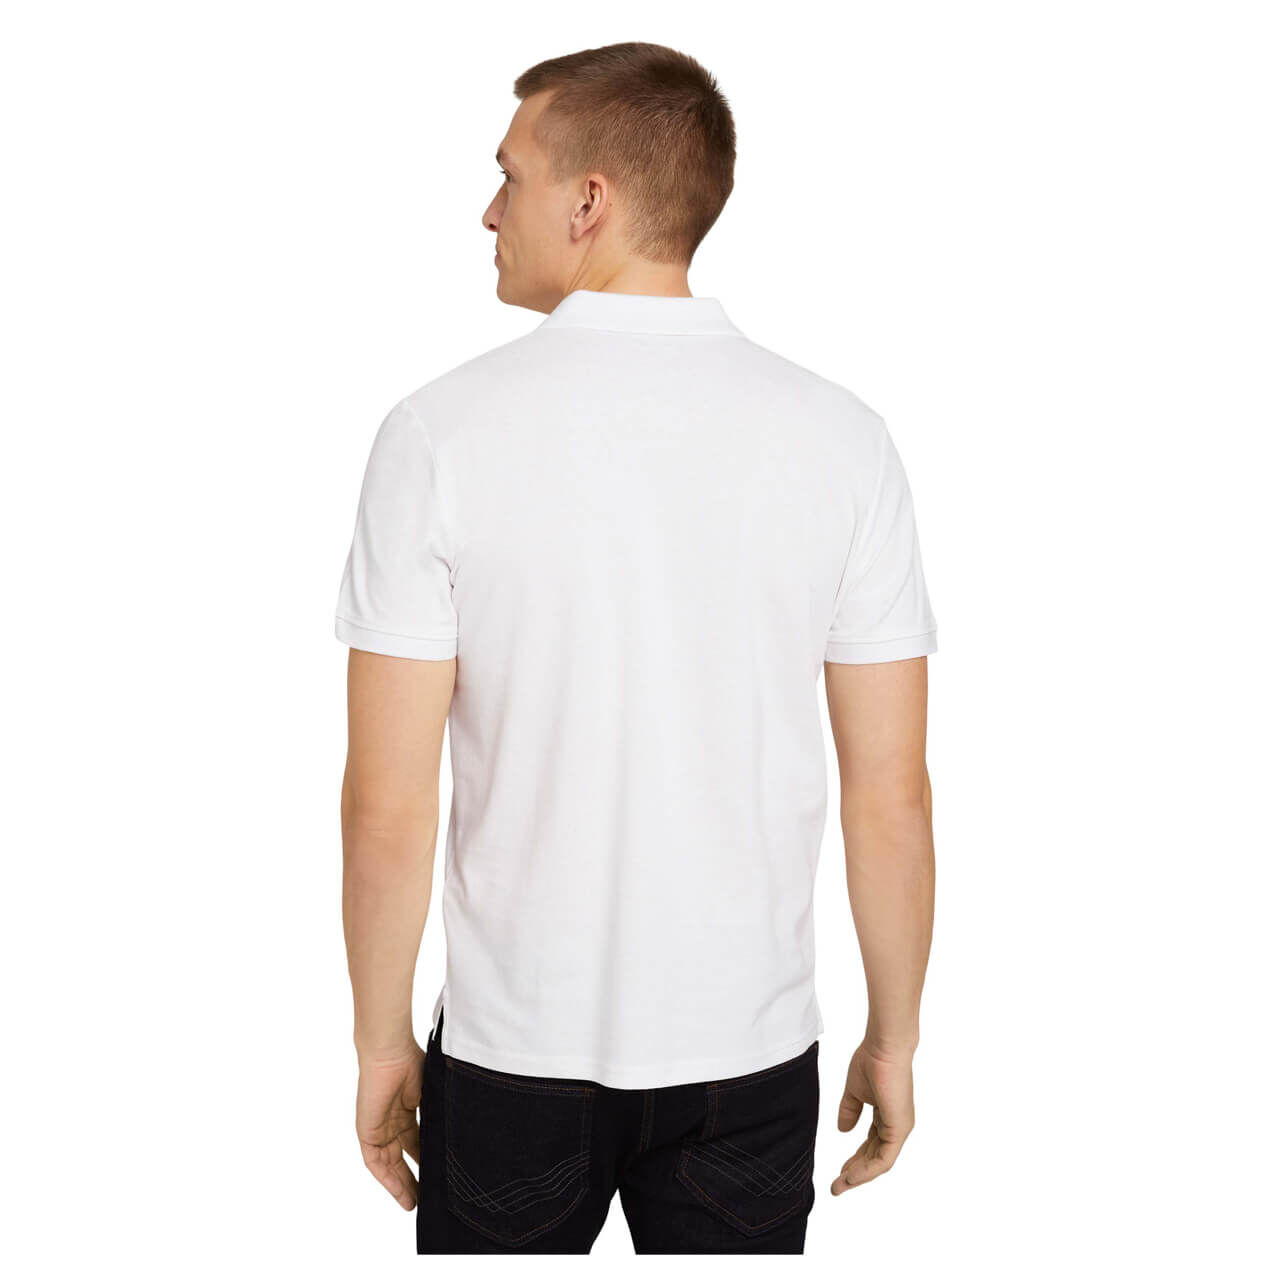 Tom Tailor Poloshirt für Herren in Weiß, FarbNr.: 20000